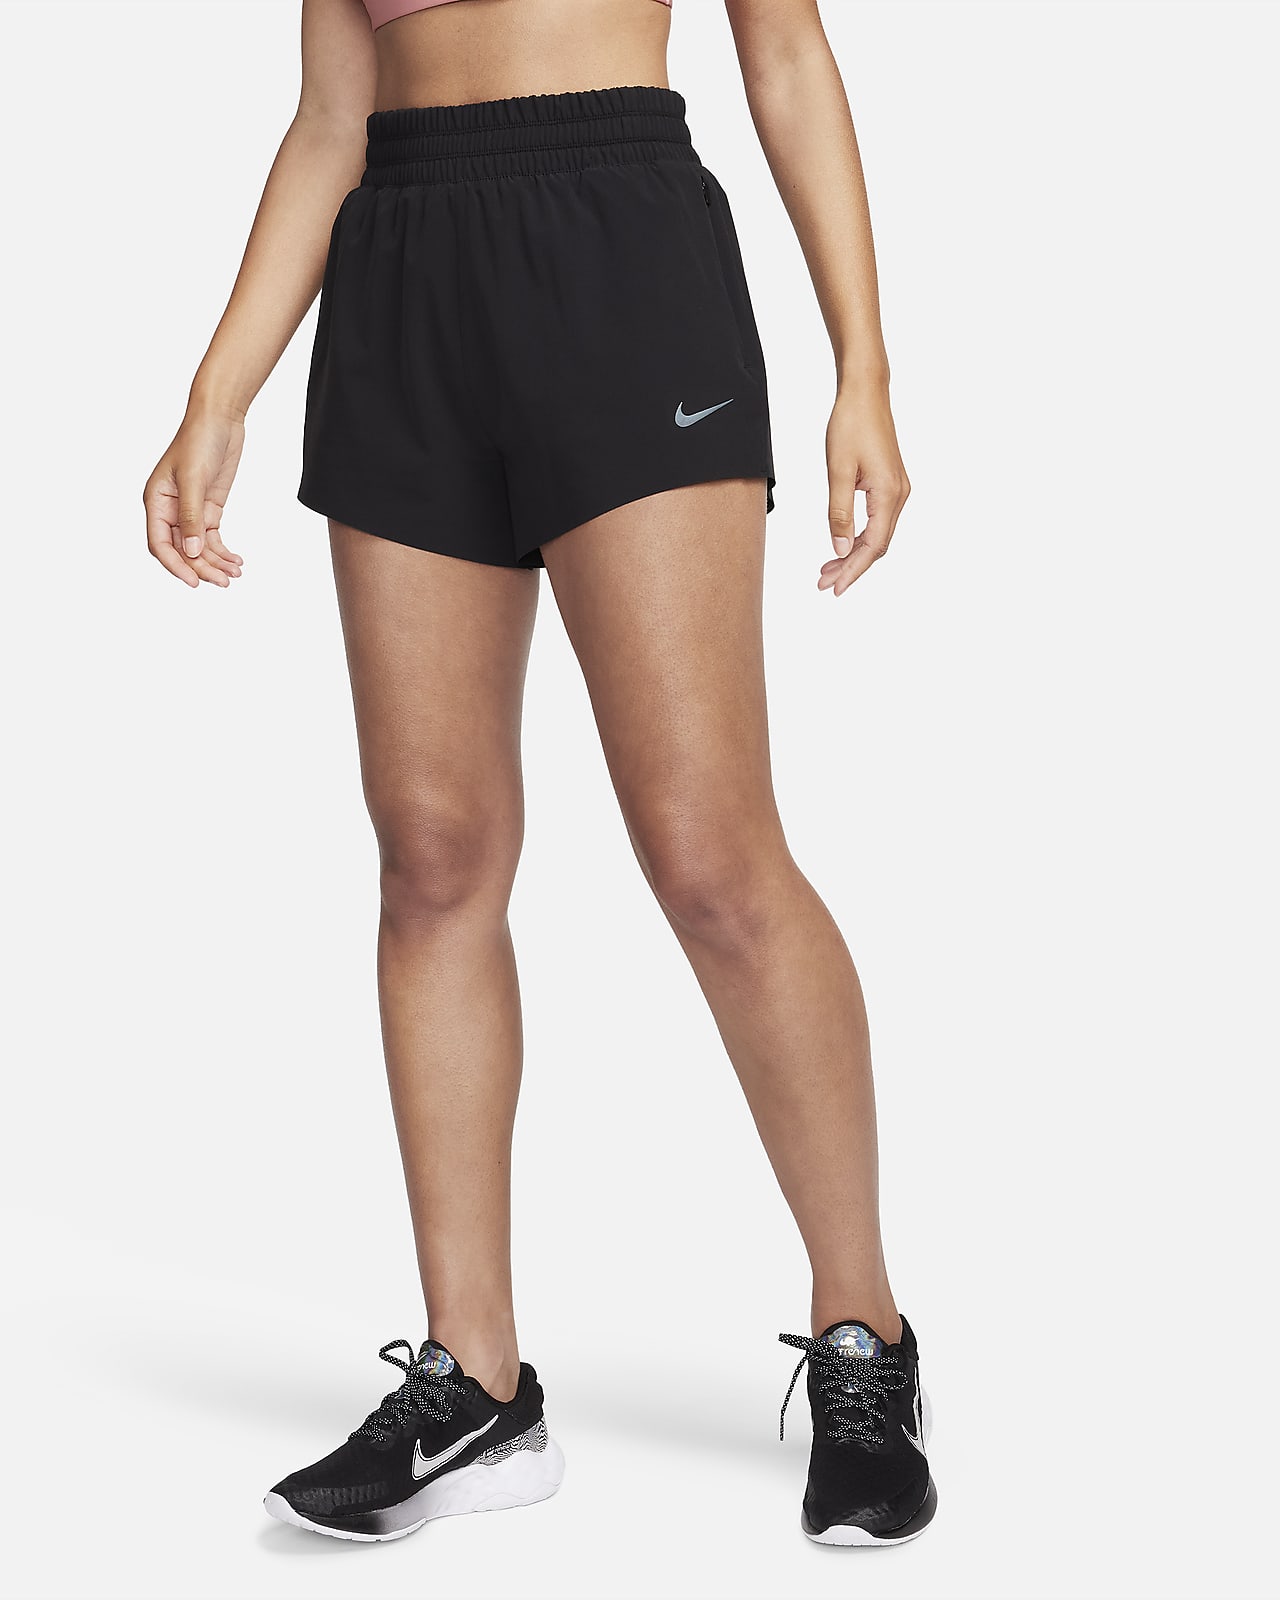 Γυναικείο ψηλόμεσο σορτς για τρέξιμο με επένδυση εσωτερικού σορτς και τσέπες Nike Dri-FIT Running Division 8 cm